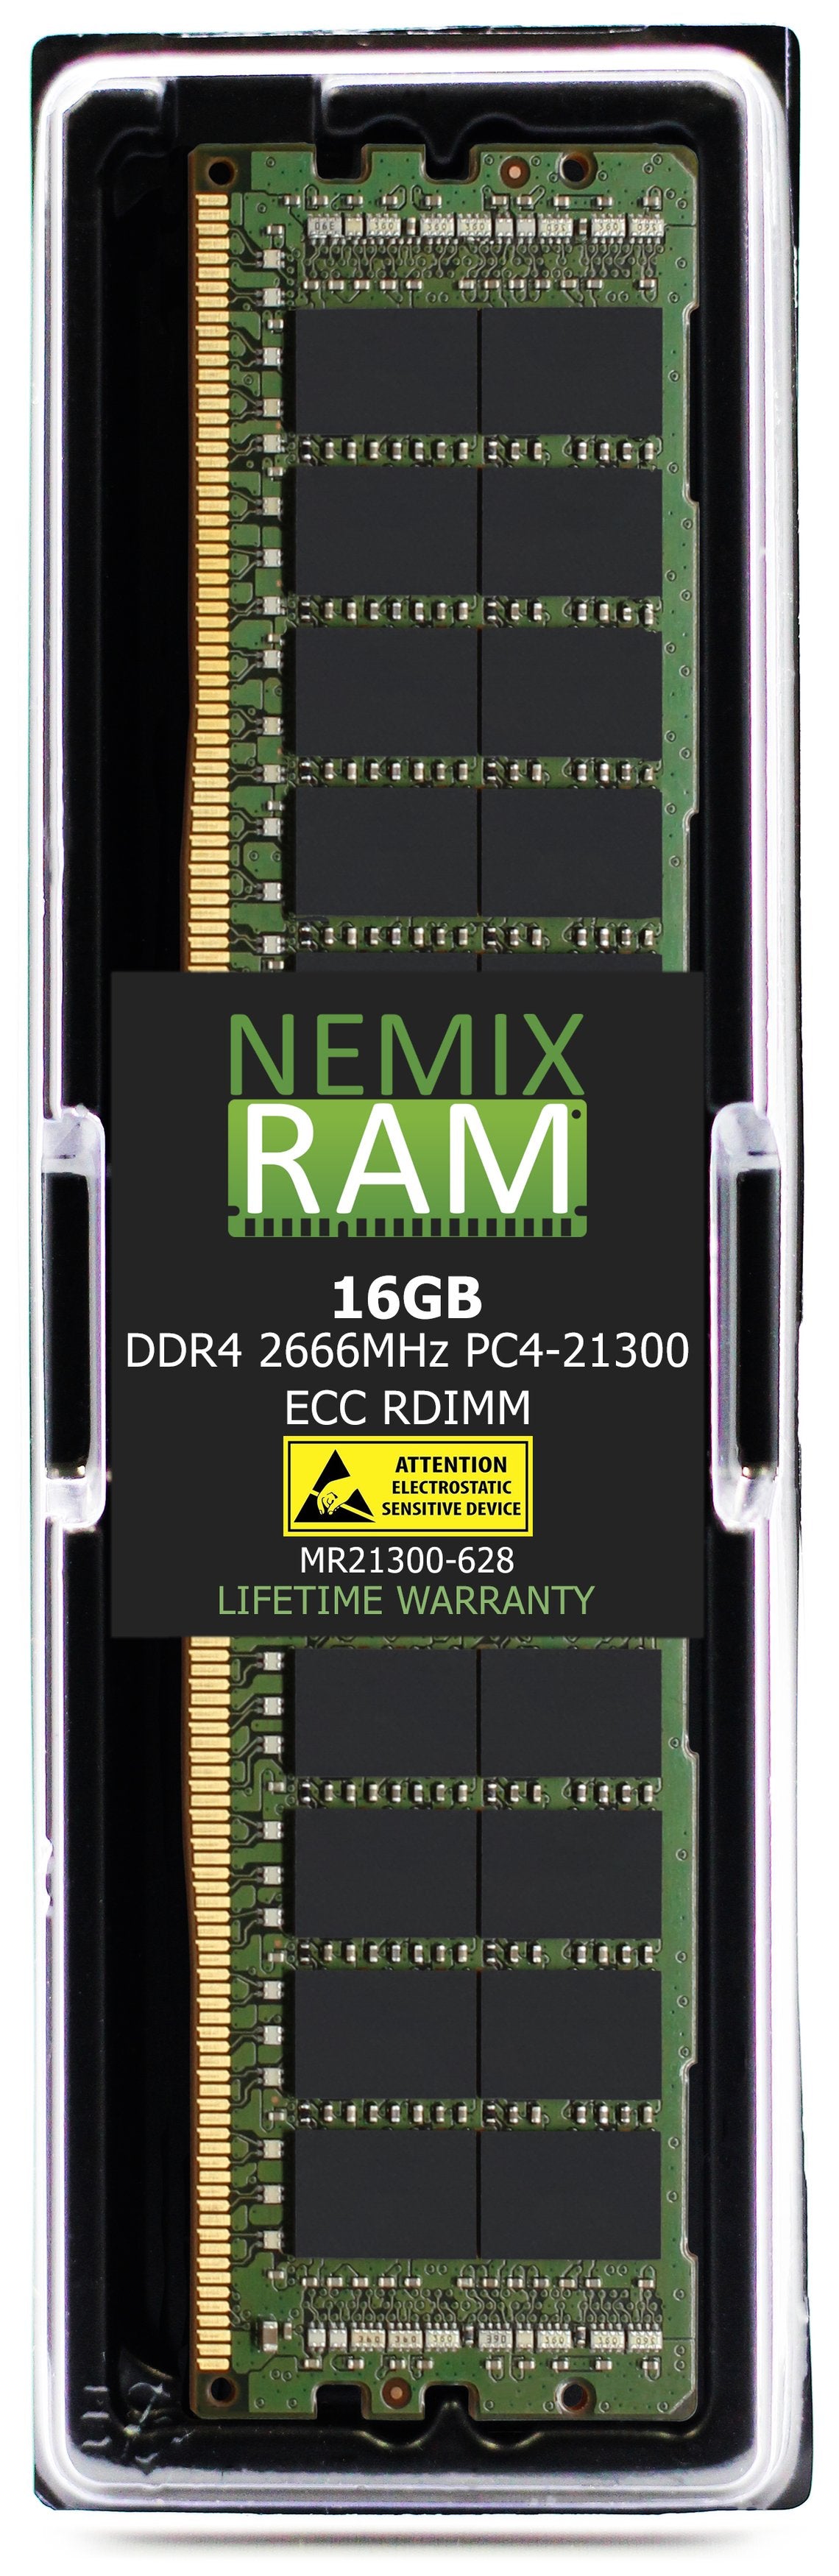 16GB DDR4 2666MHZ PC4-21300 RDIMM Compatible with Supermicro MEM-DR416L-CL01-ER29